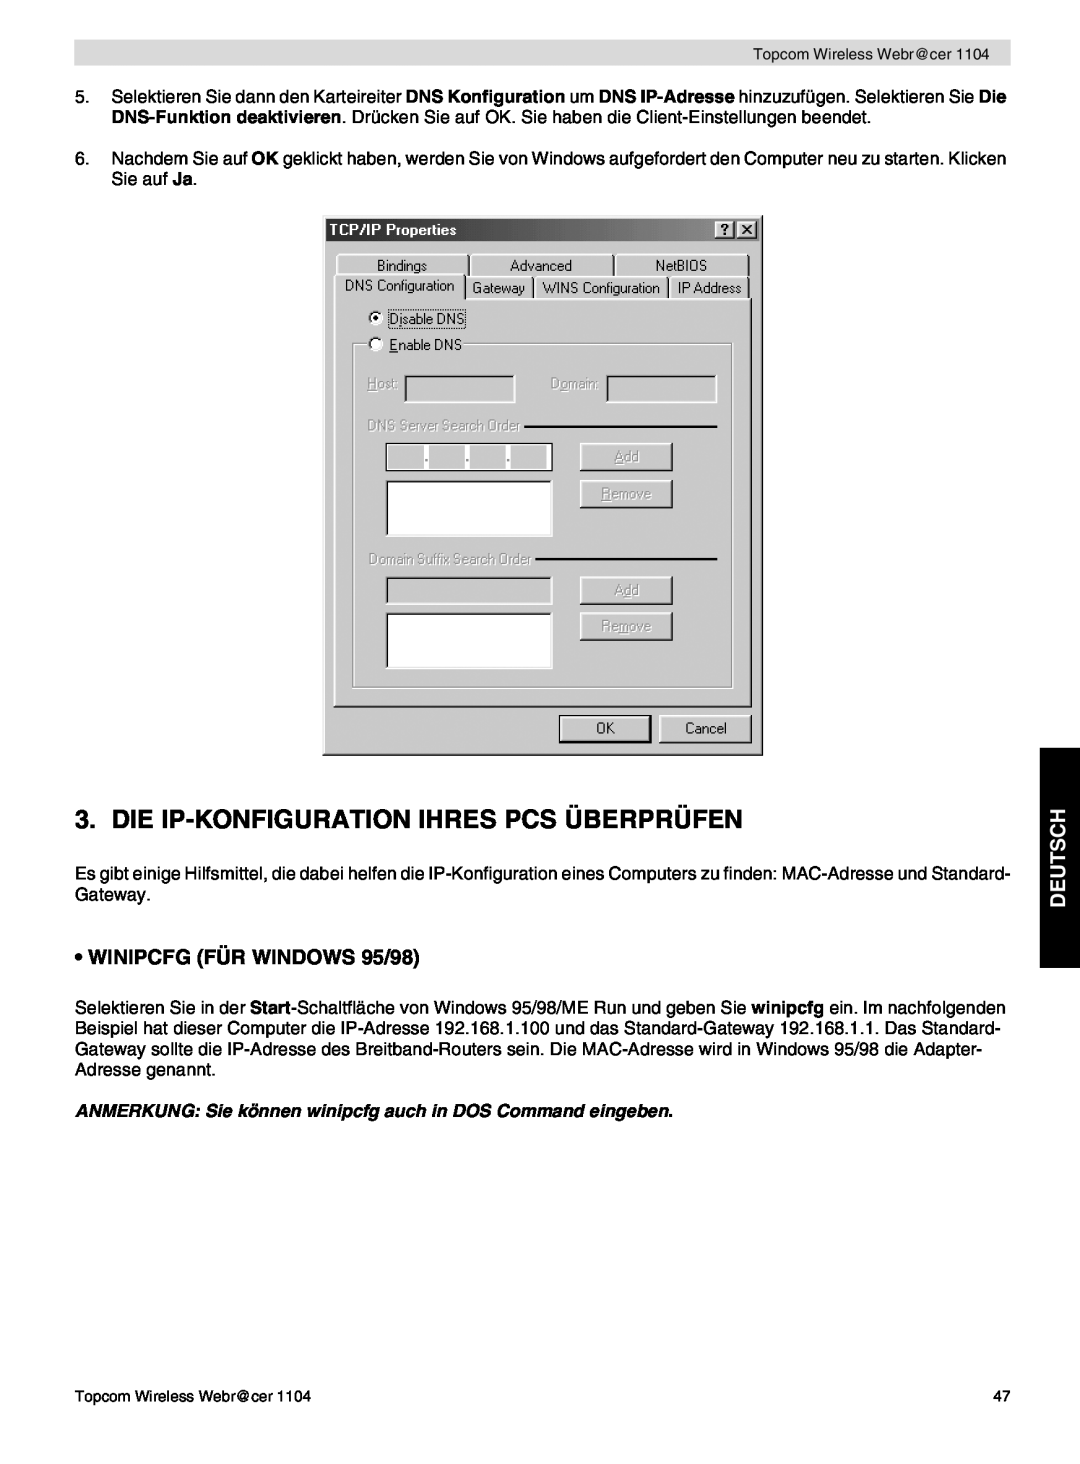 Topcom 1104 manual do utilizador Die Ip-Konfiguration Ihres Pcs Überprüfen, WINIPCFG FÜR WINDOWS 95/98, Deutsch 